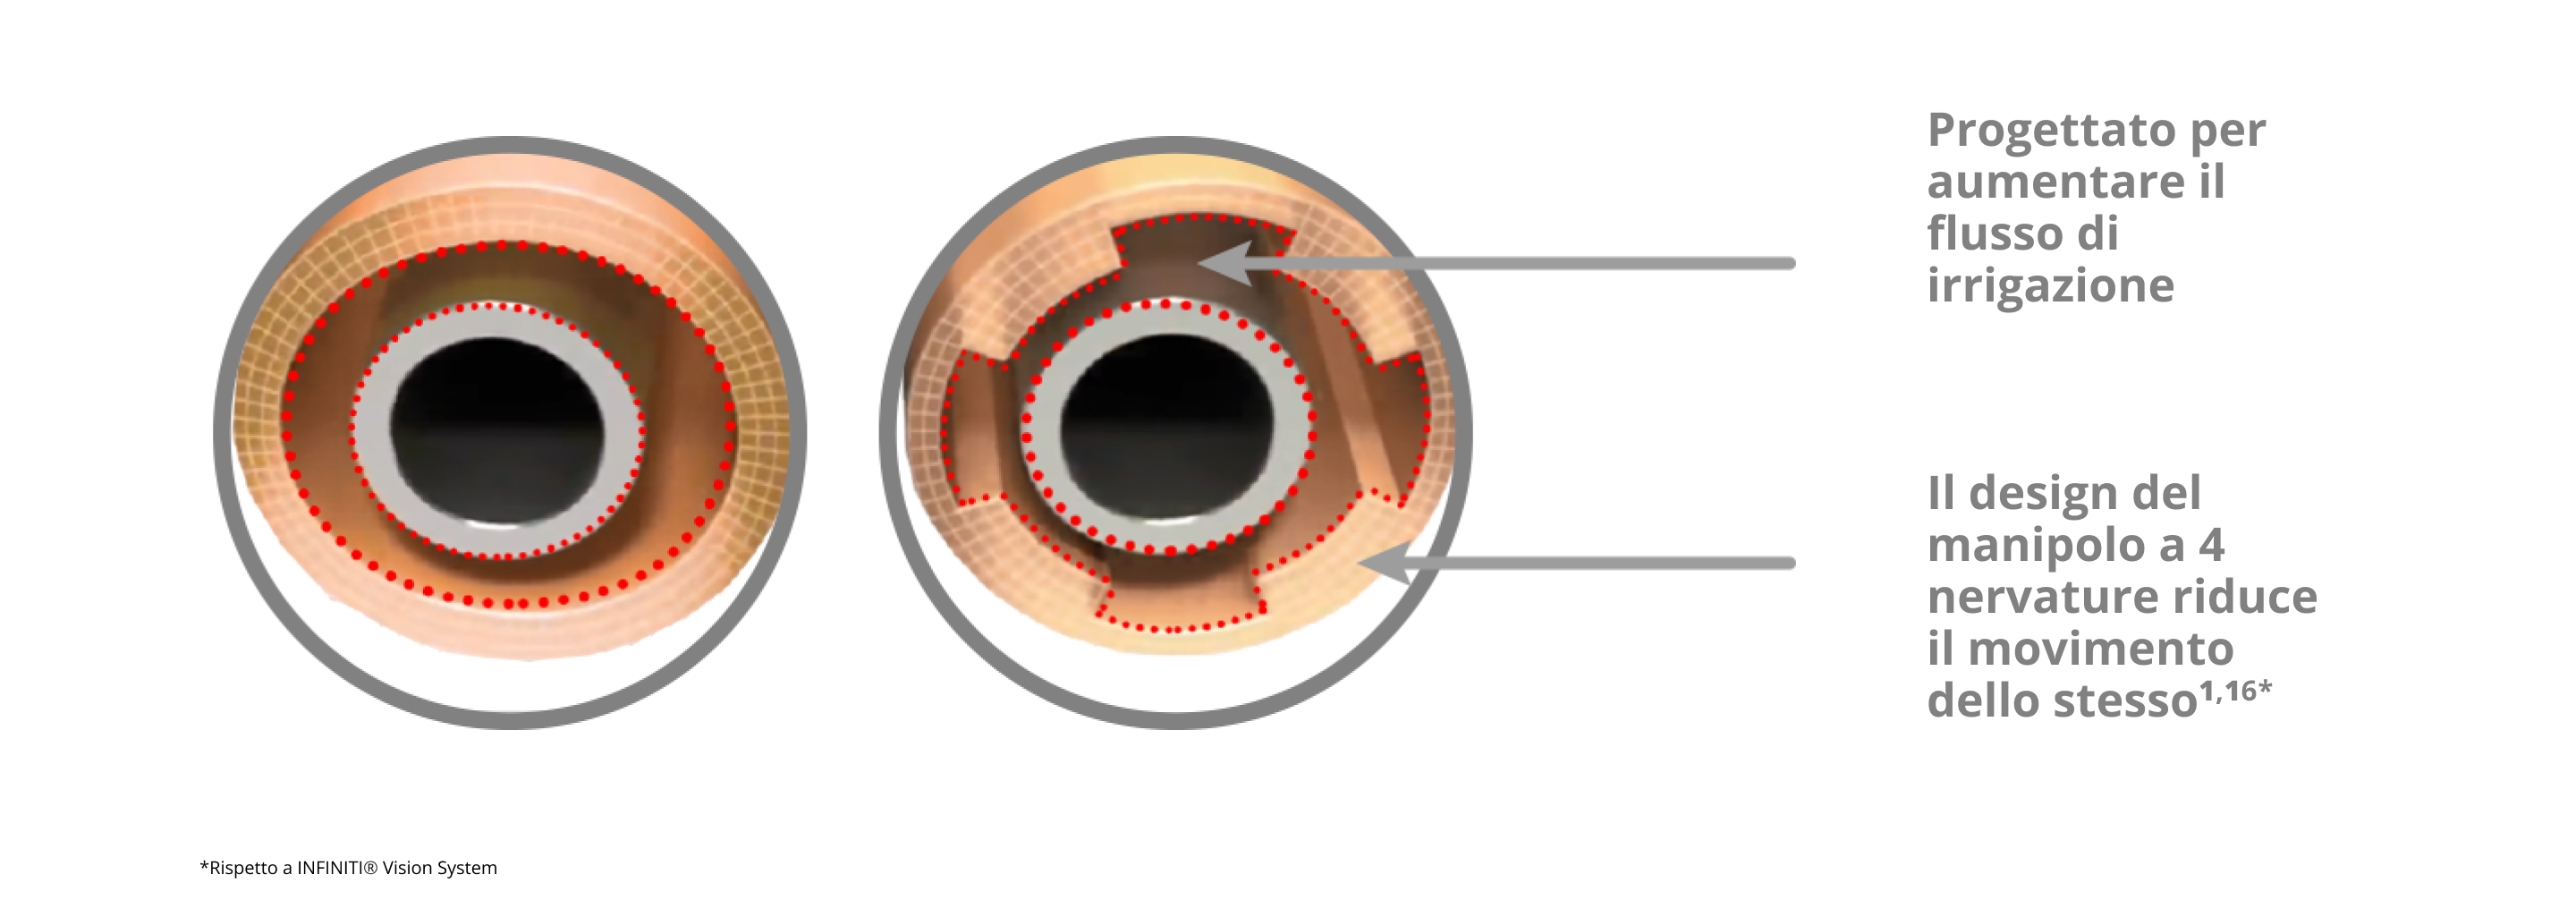 Un'immagine di questo mostra il manicotto di irrigazione INTREPID con un design a 4 nervature che riduce il movimento del manicotto e aumenta il flusso di irrigazione rispetto al sistema INFINITI Vision.